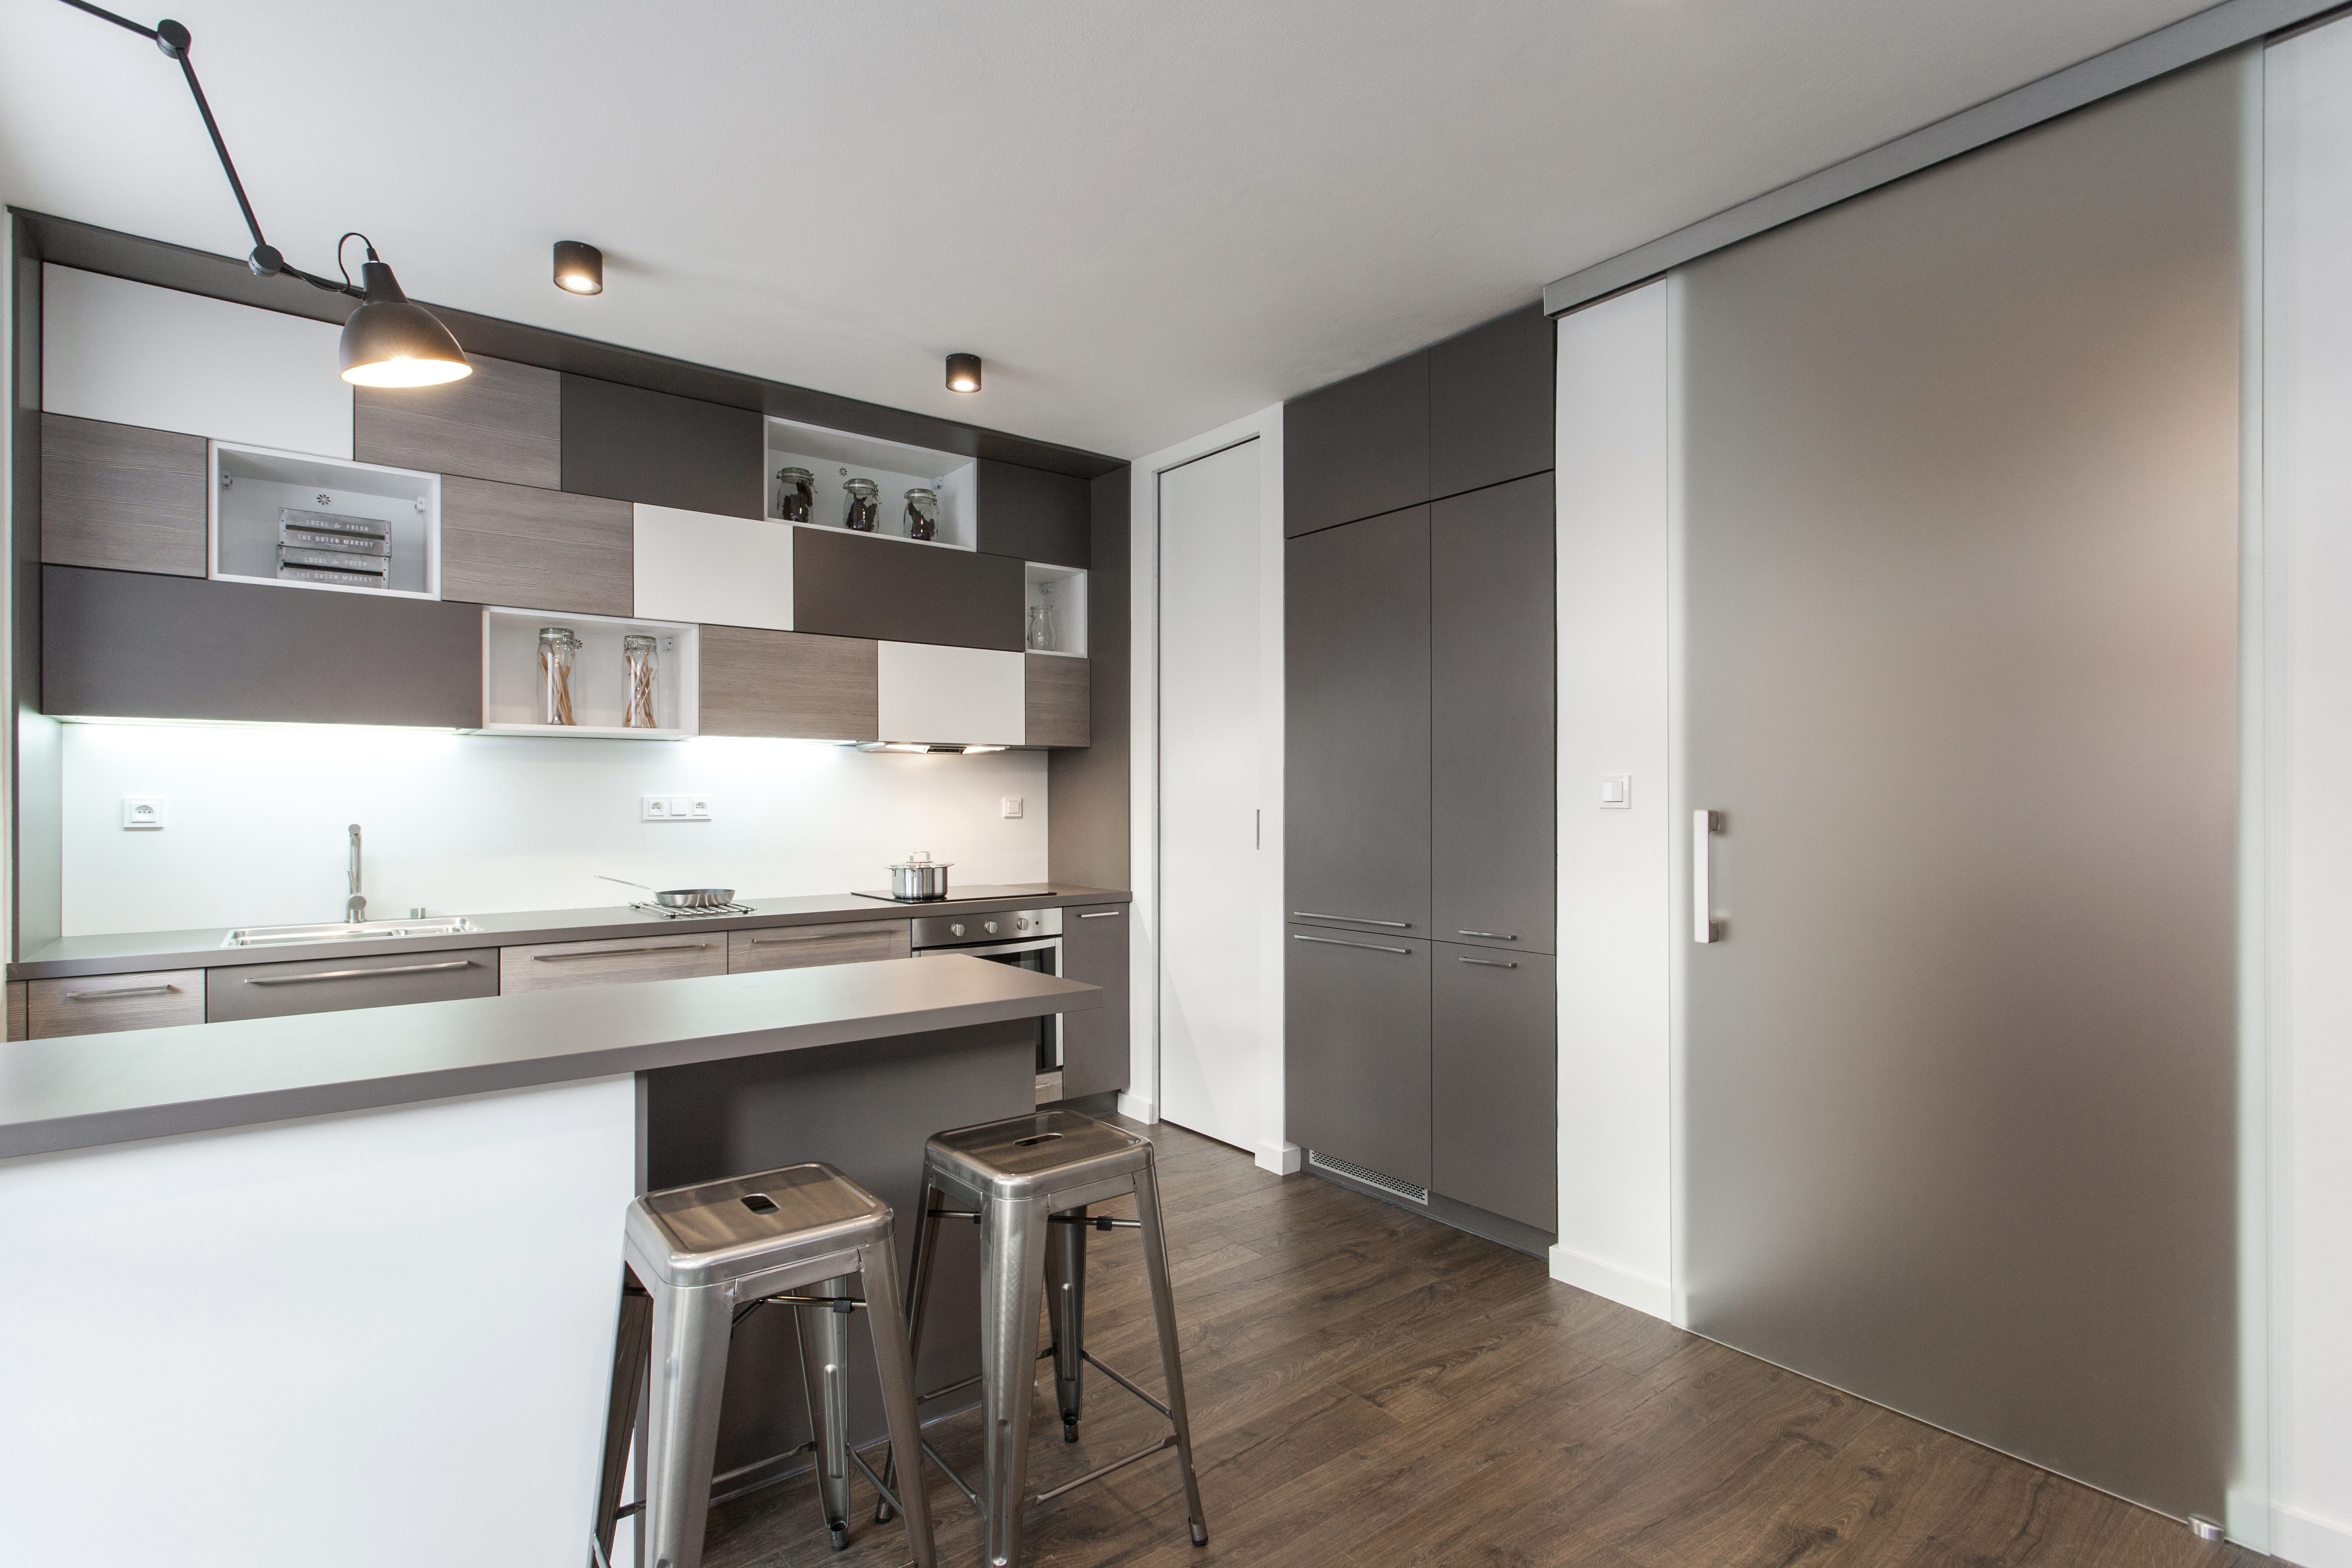 Interiérové dveře posuvné na zeď celoskleněné v minimalistické garnýži v kuchyňském prostoru 